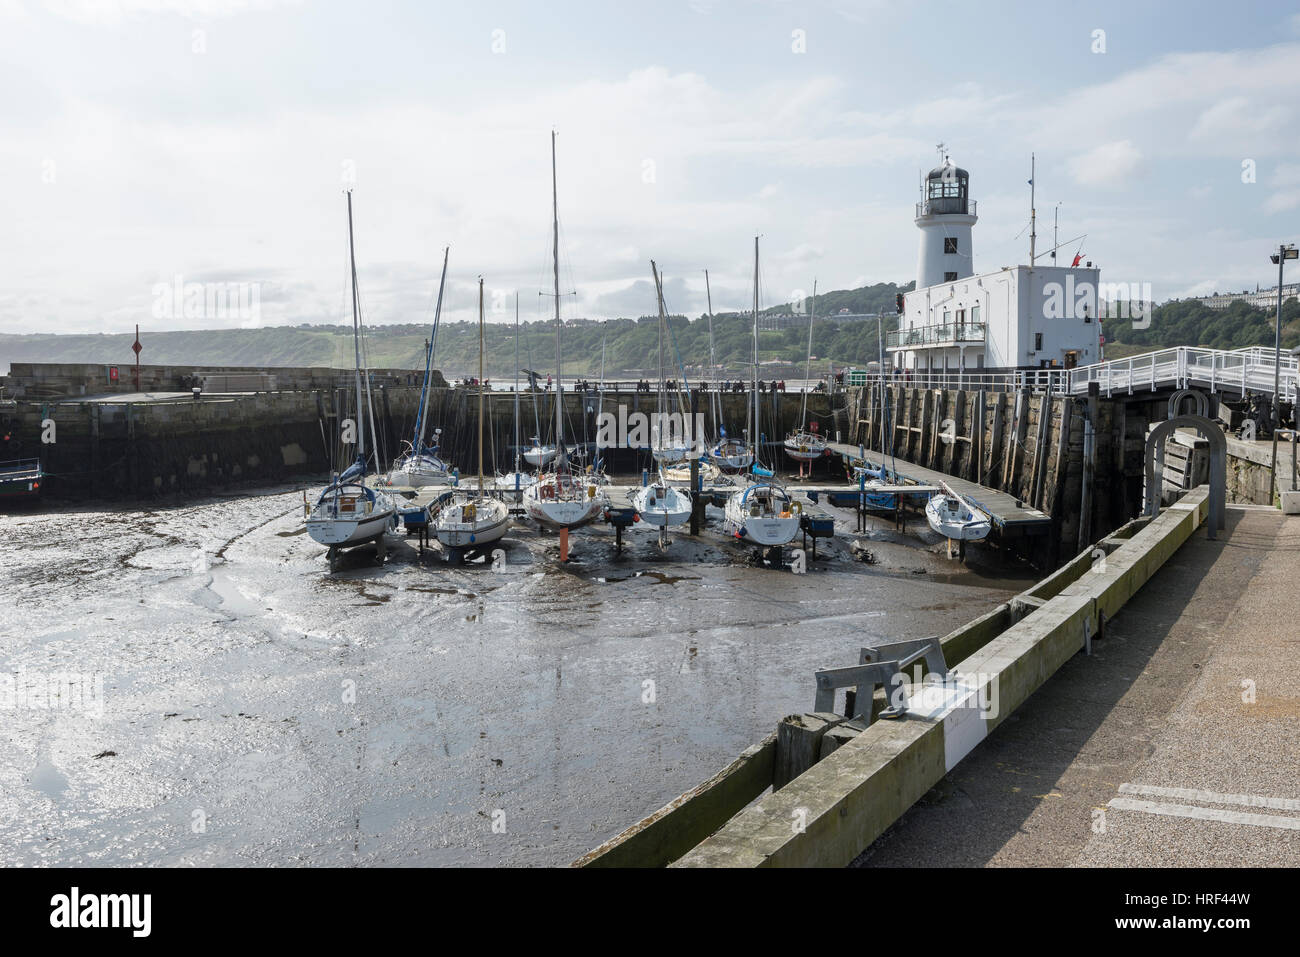 Bella giornata al porto di Scarbrough in questa famosa località balneare sulla costa nordorientale dell'Inghilterra. Foto Stock